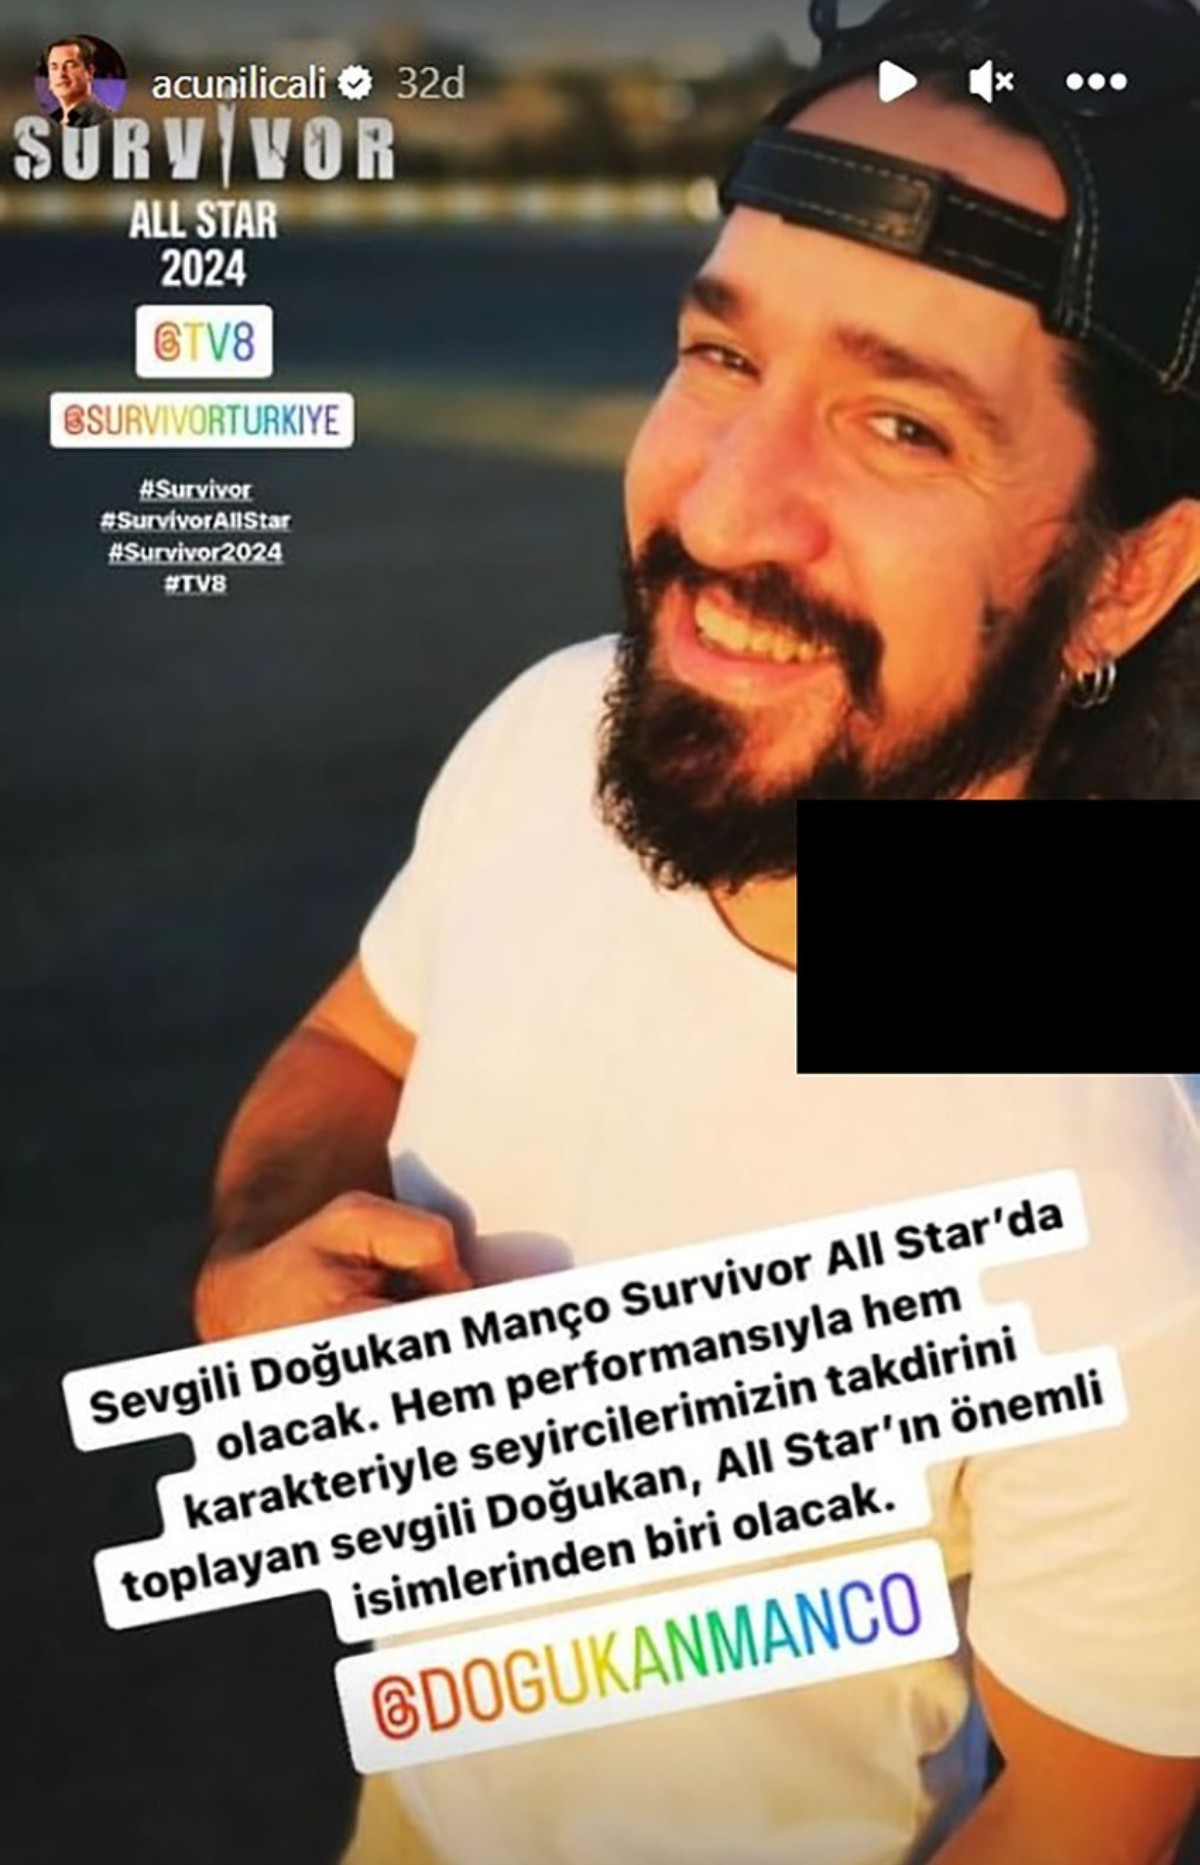 Survivor All Star Doğukan Manço